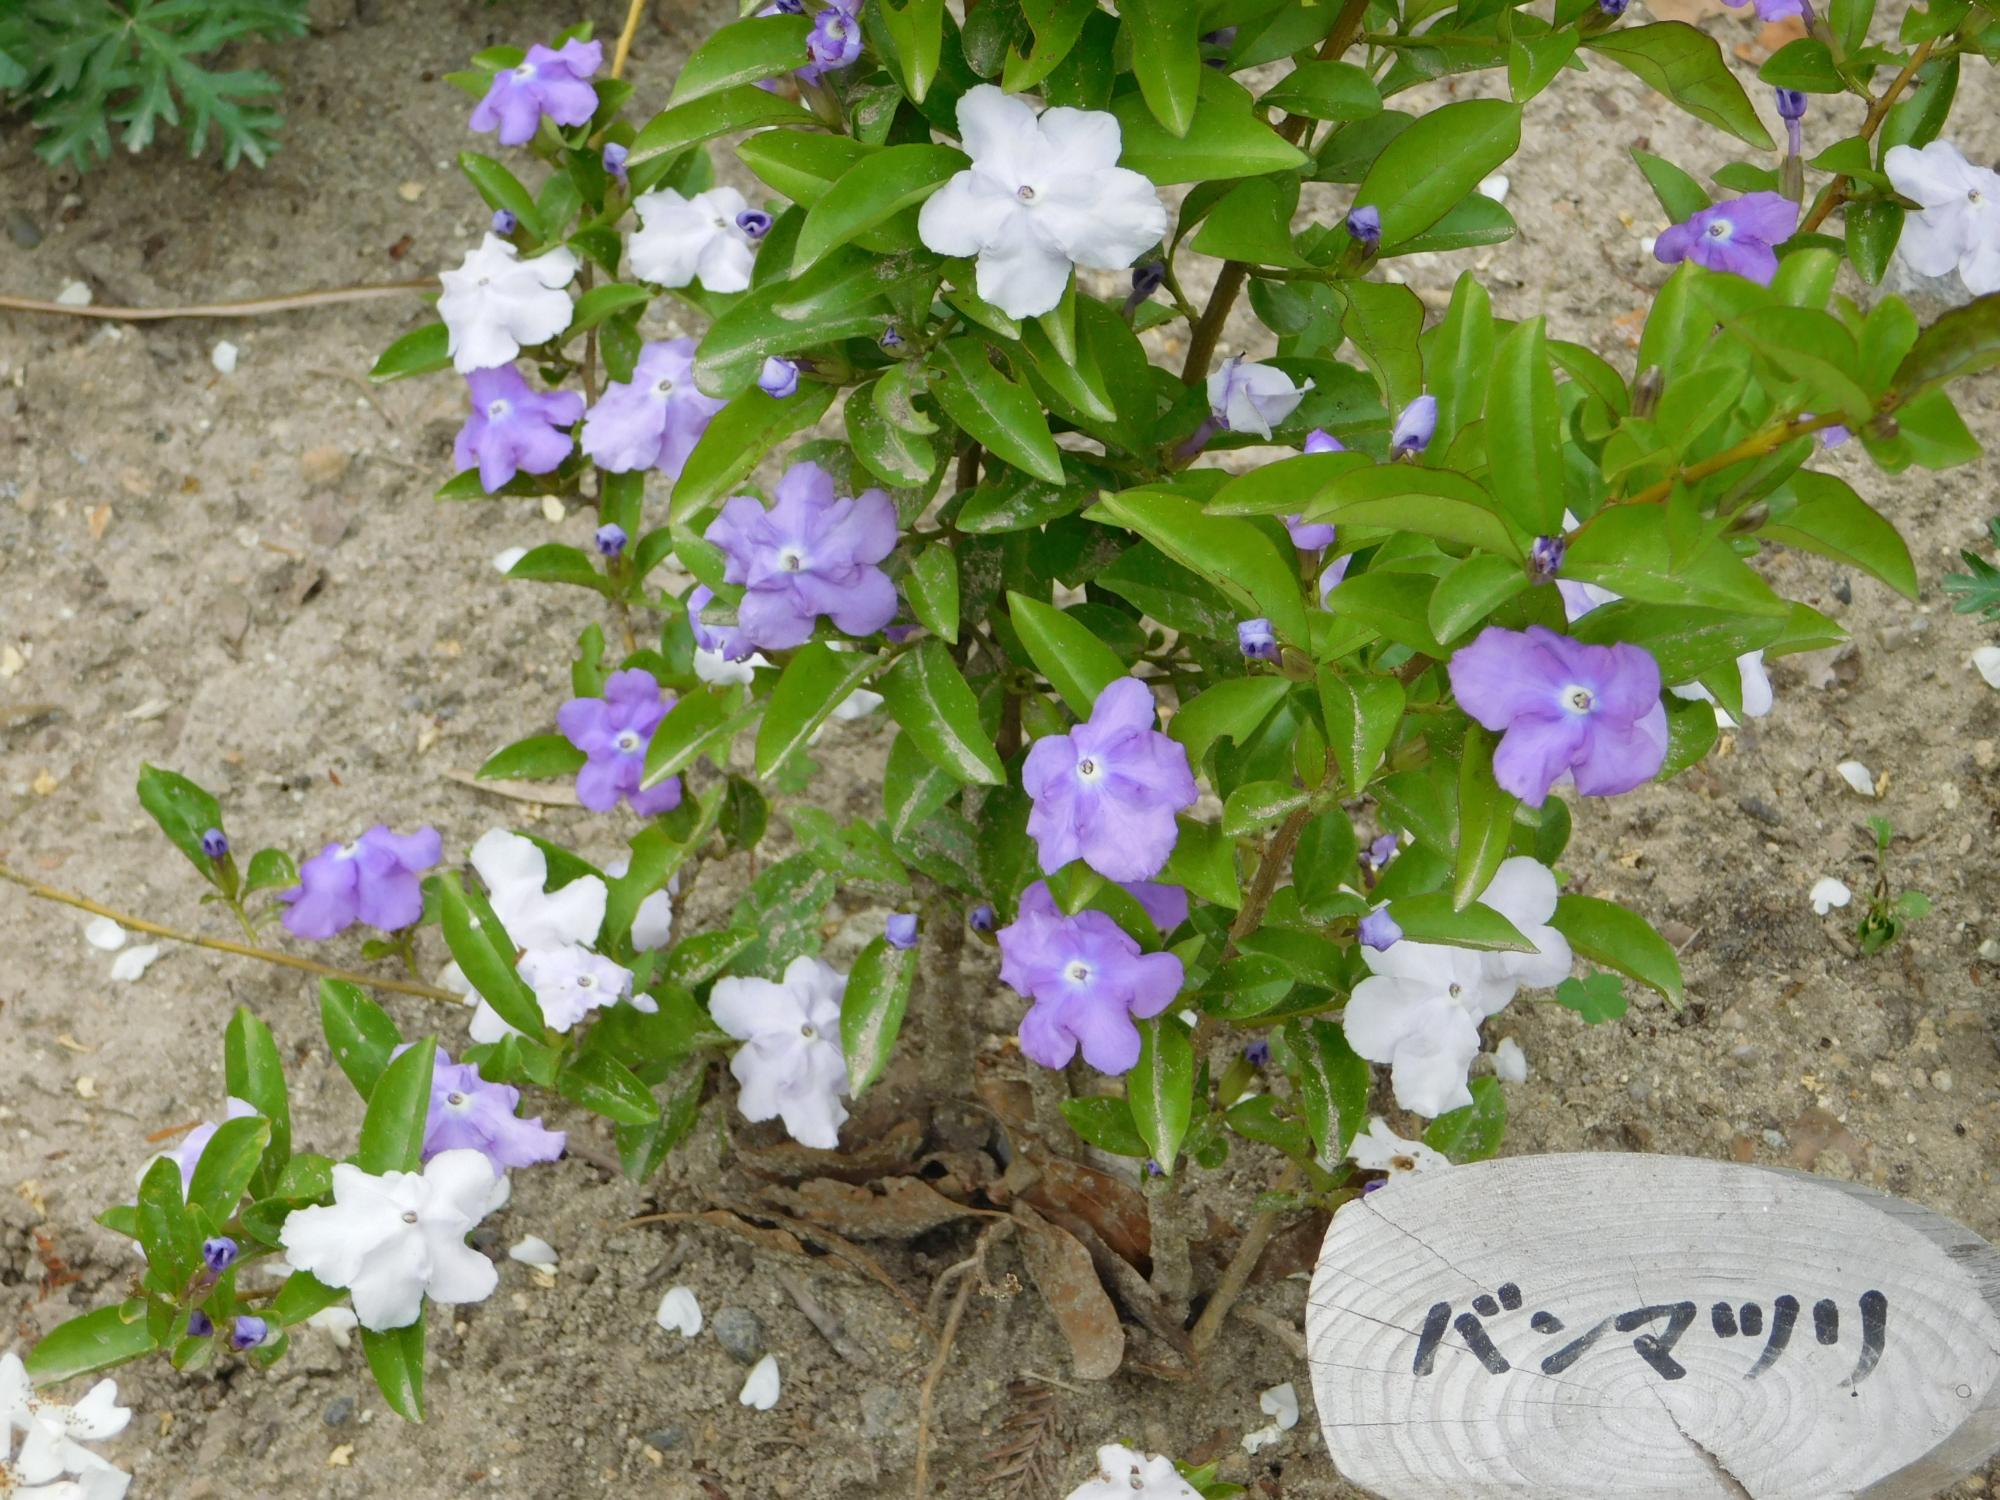 薬草園の南角の沿道沿いにバンマツリの花が咲いています。バンマツリの花は、紫から白へ花色が変化します。